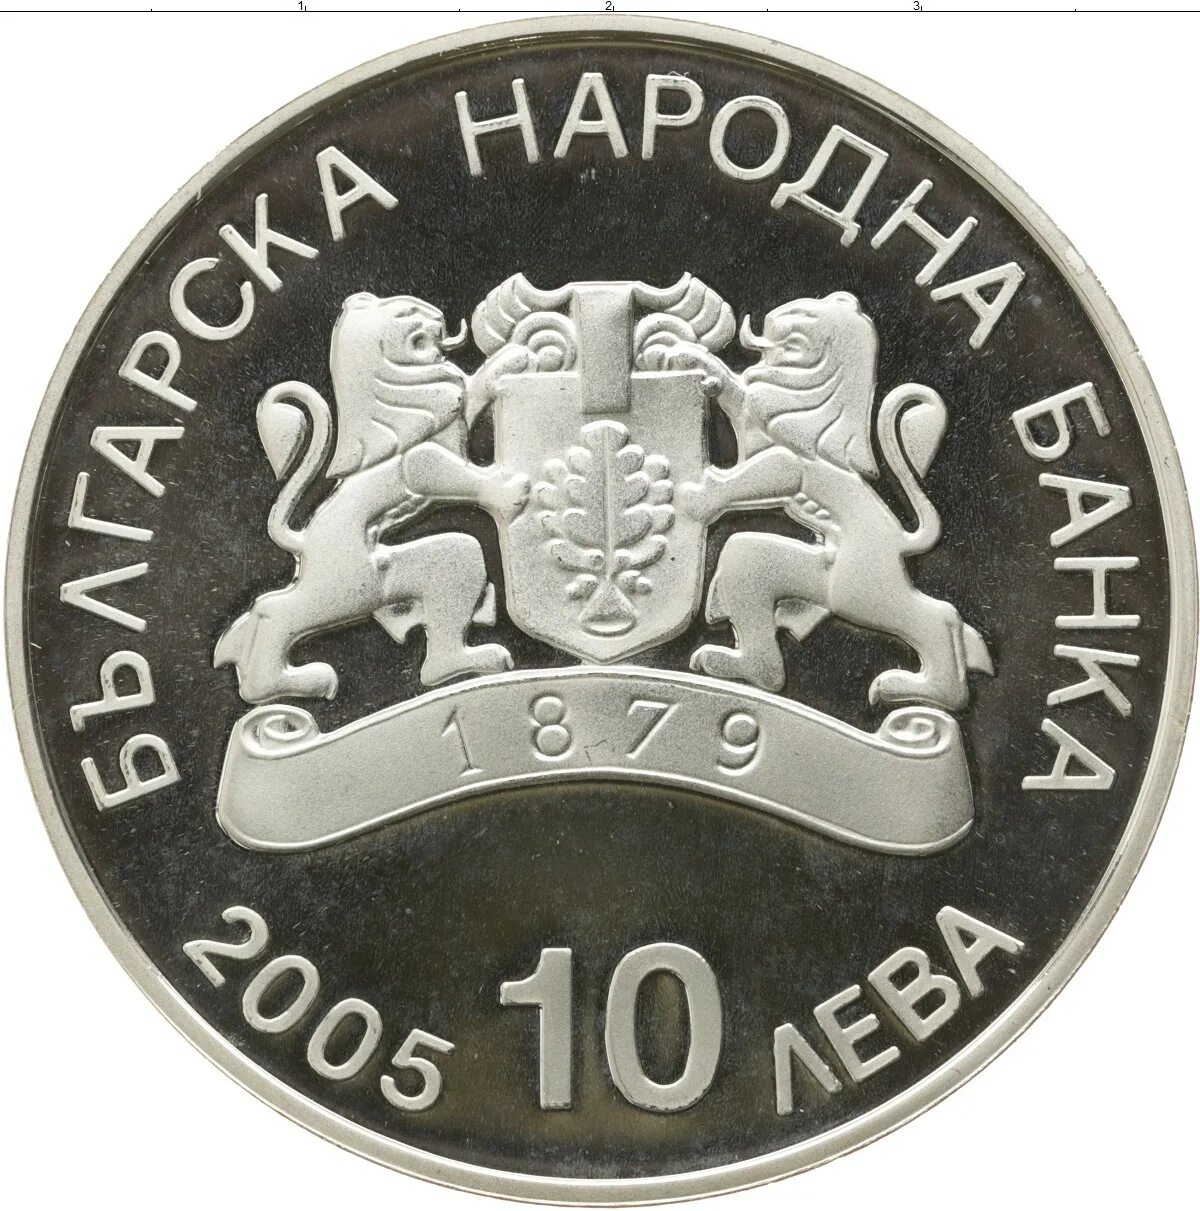 Лев монета Болгарии. 2 Лева монета. Валюта Болгарии монеты. Болгарские монеты. Лев денежная единица